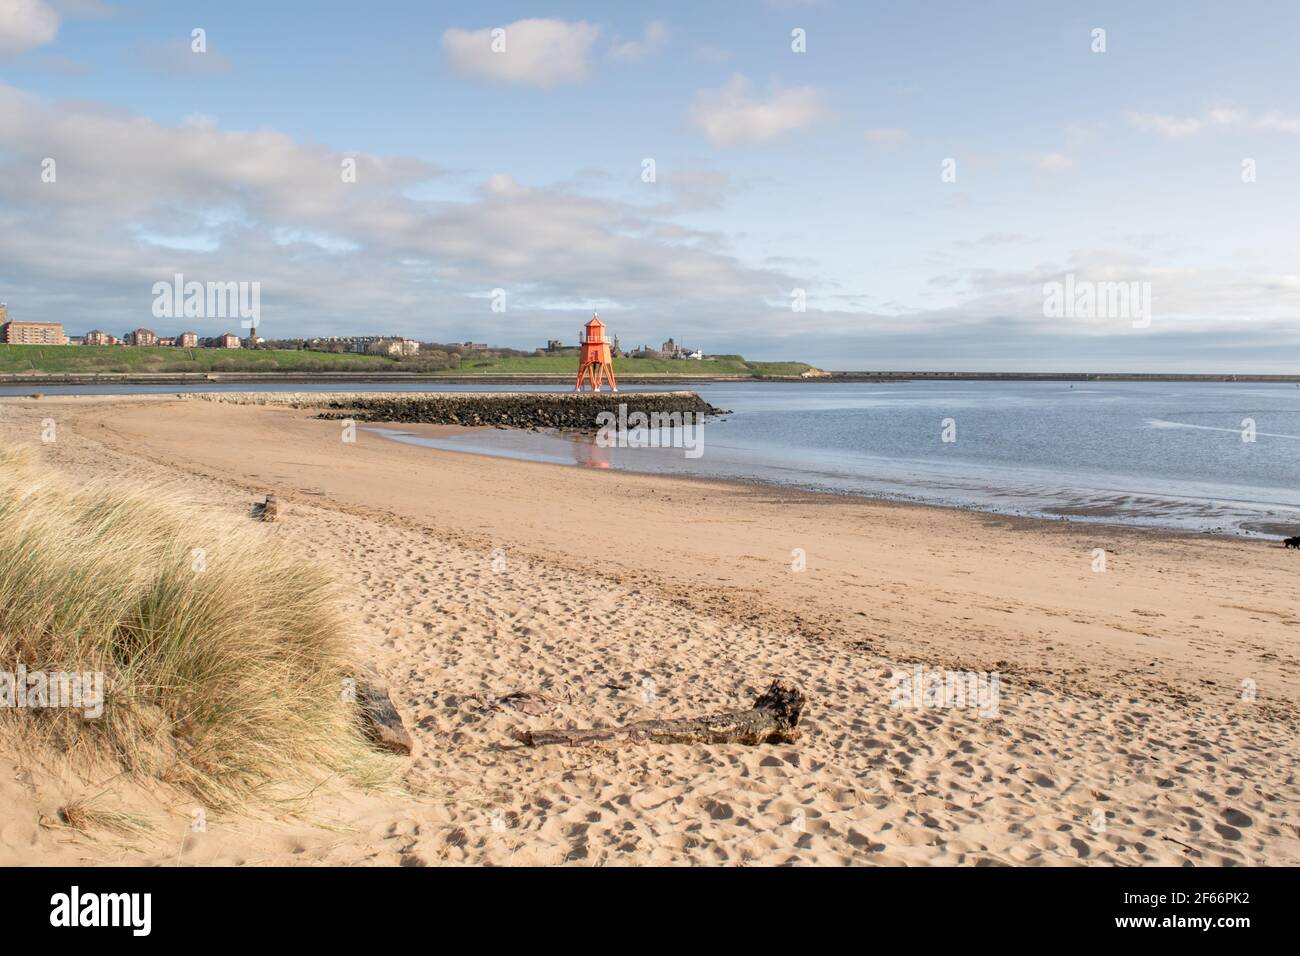 Vista de la costa de la playa South Shields, una ciudad costera cerca de Newcastle upon Tyne en el noreste de Inglaterra. Foto de stock